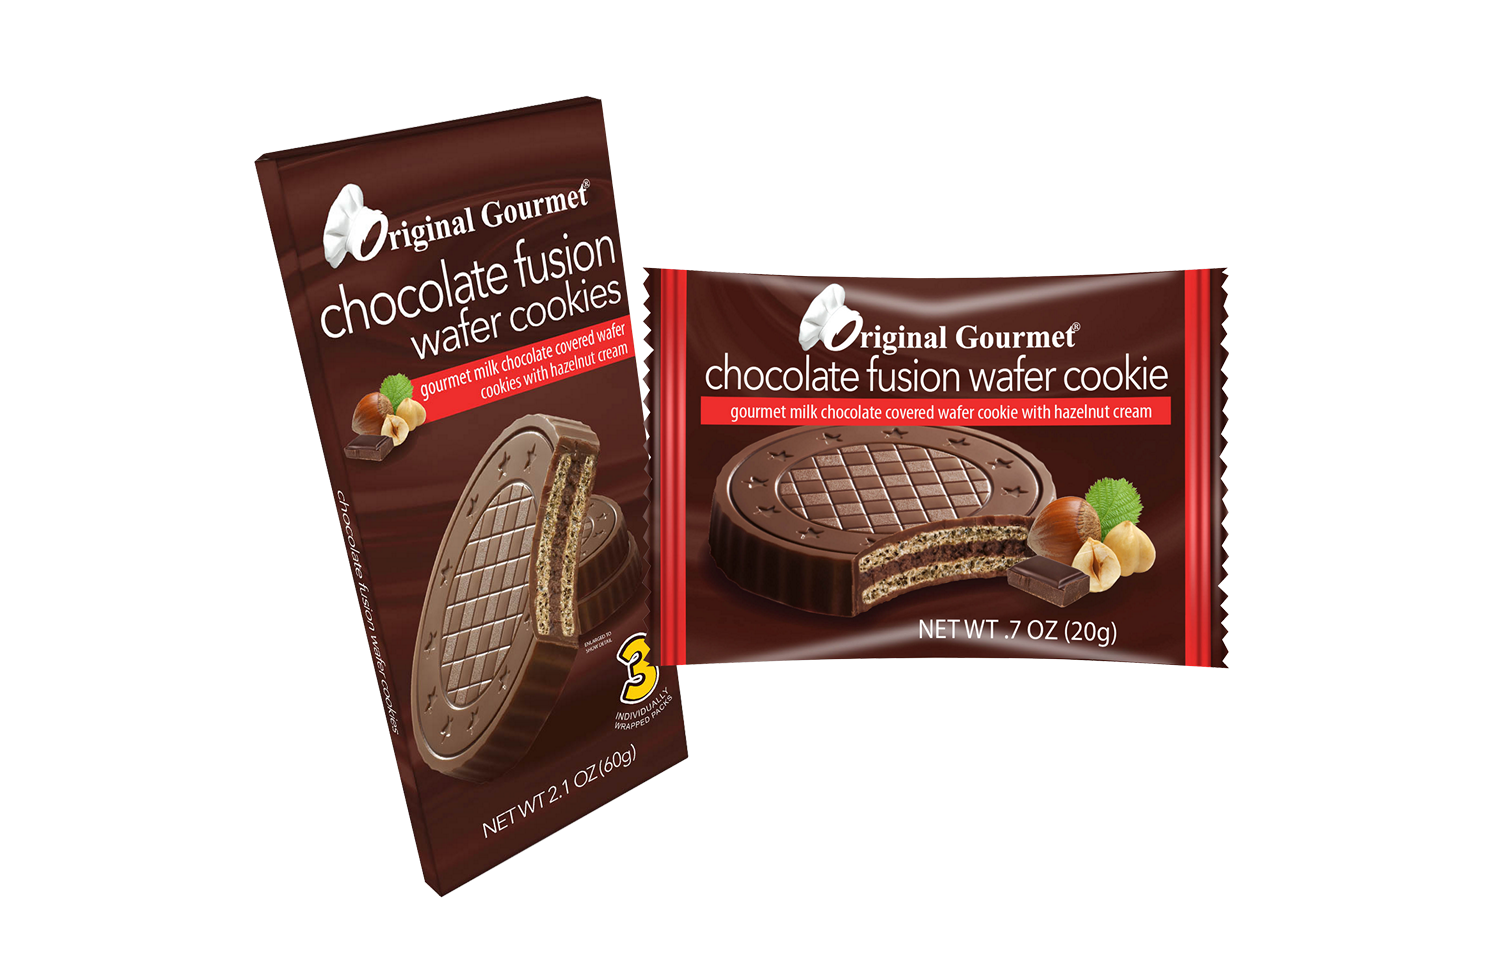 https://exclusivebrands.ca/wp-content/uploads/2021/02/prod-cookies-Original_Gourmet_Wafer_Cookies-e1614609703611.png